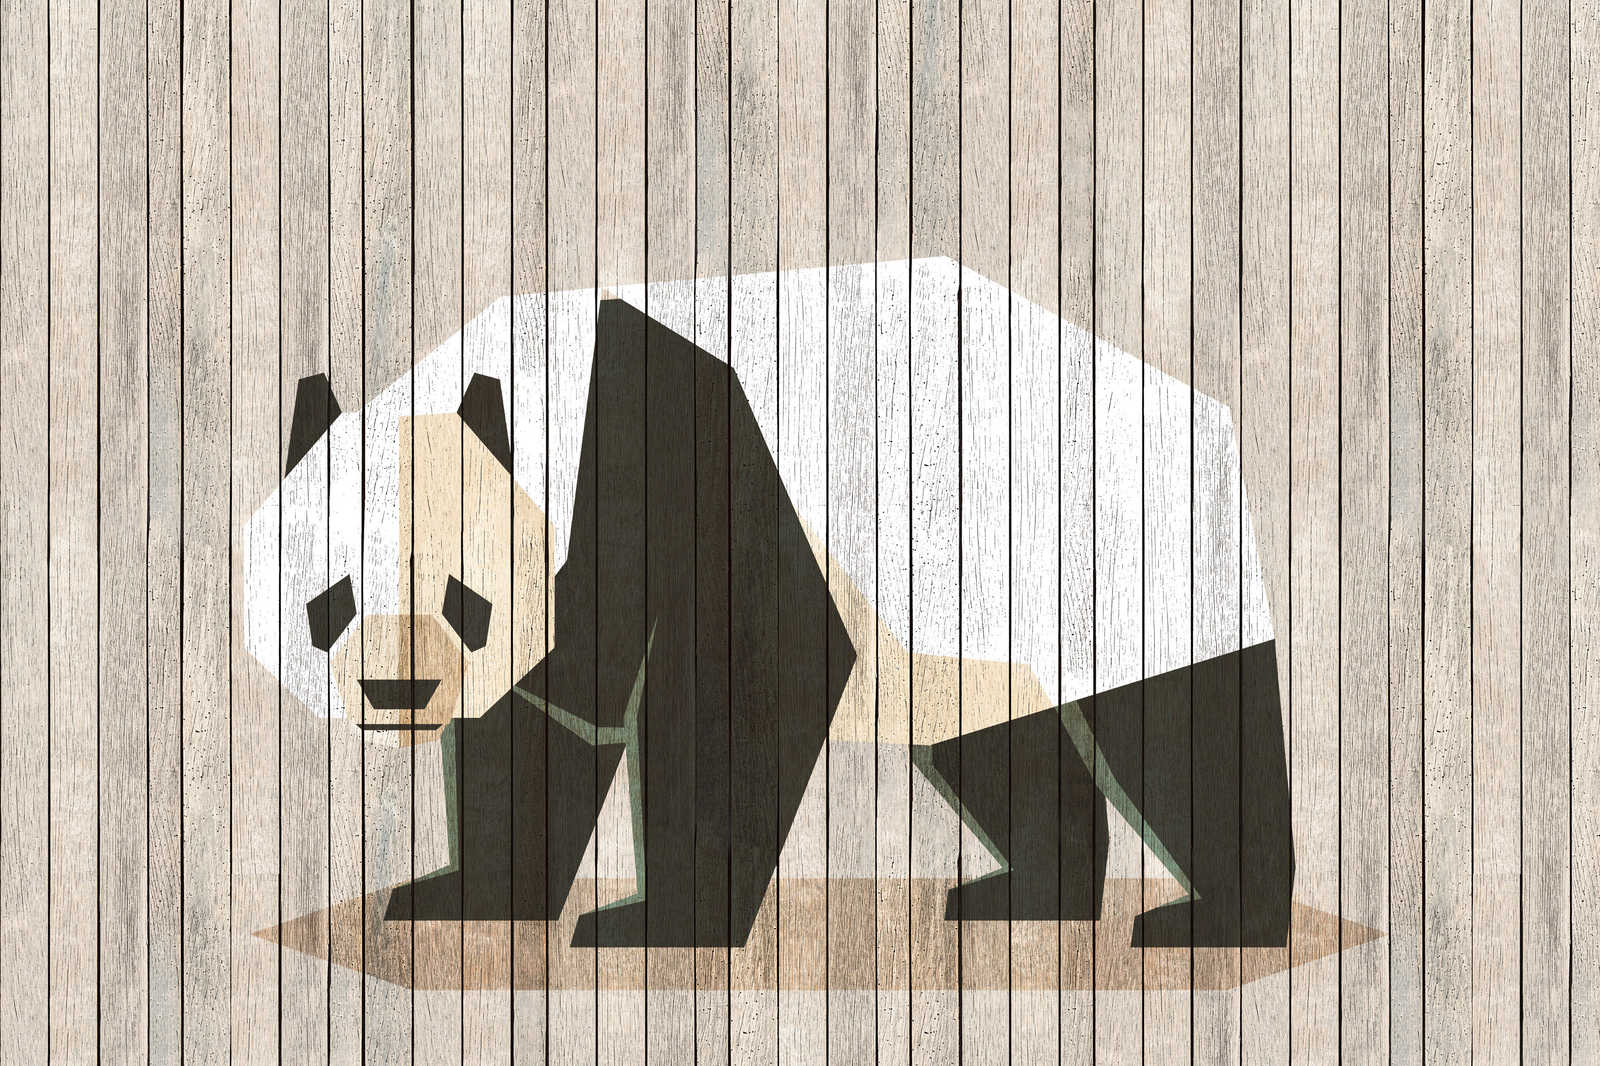             Born to Be Wild 2 - Pintura en lienzo sobre estructura de panel de madera con panda y pared de tablero - 0,90 m x 0,60 m
        